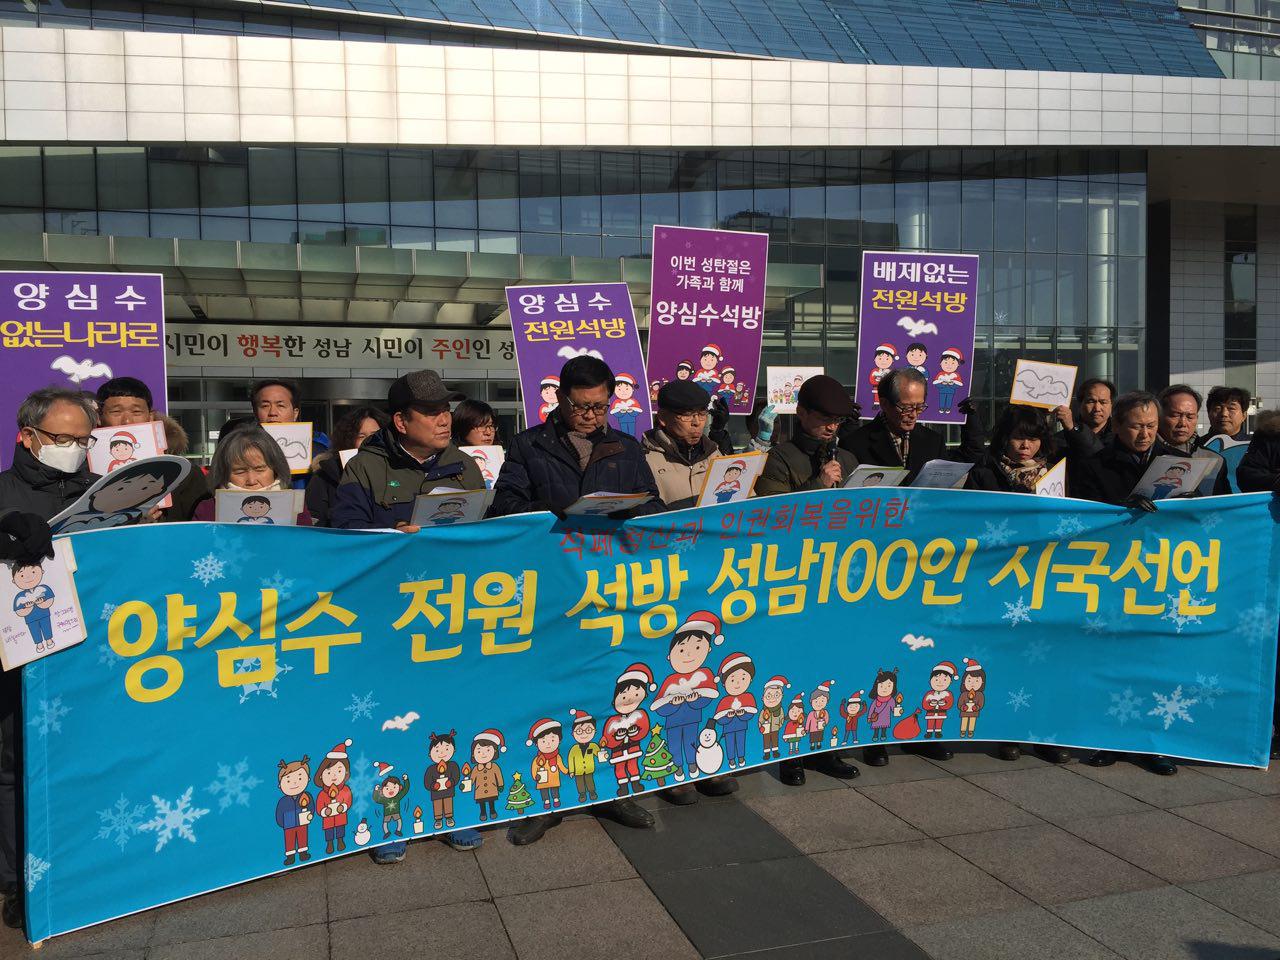 성남평화연대 가 지난 12월 8일 성남시청사 앞에서 성명서를 발표하고 있다.